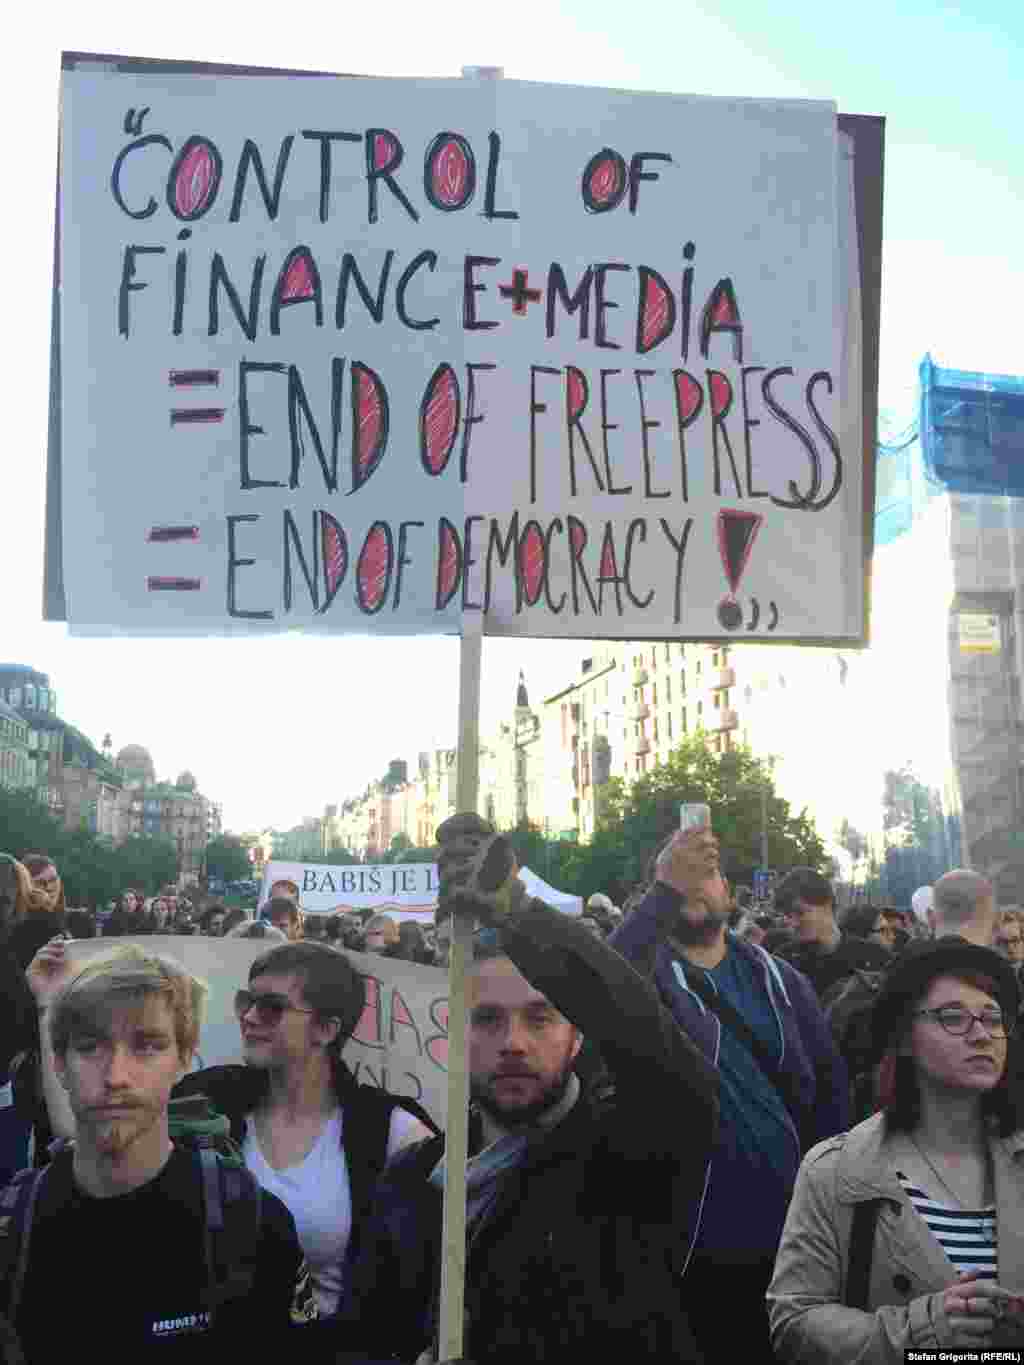 Formula dezastrului, potrivit protestatarului: &bdquo;Controlul finanțelor+media=sfârșitul libertății presei și al democrației&rdquo;